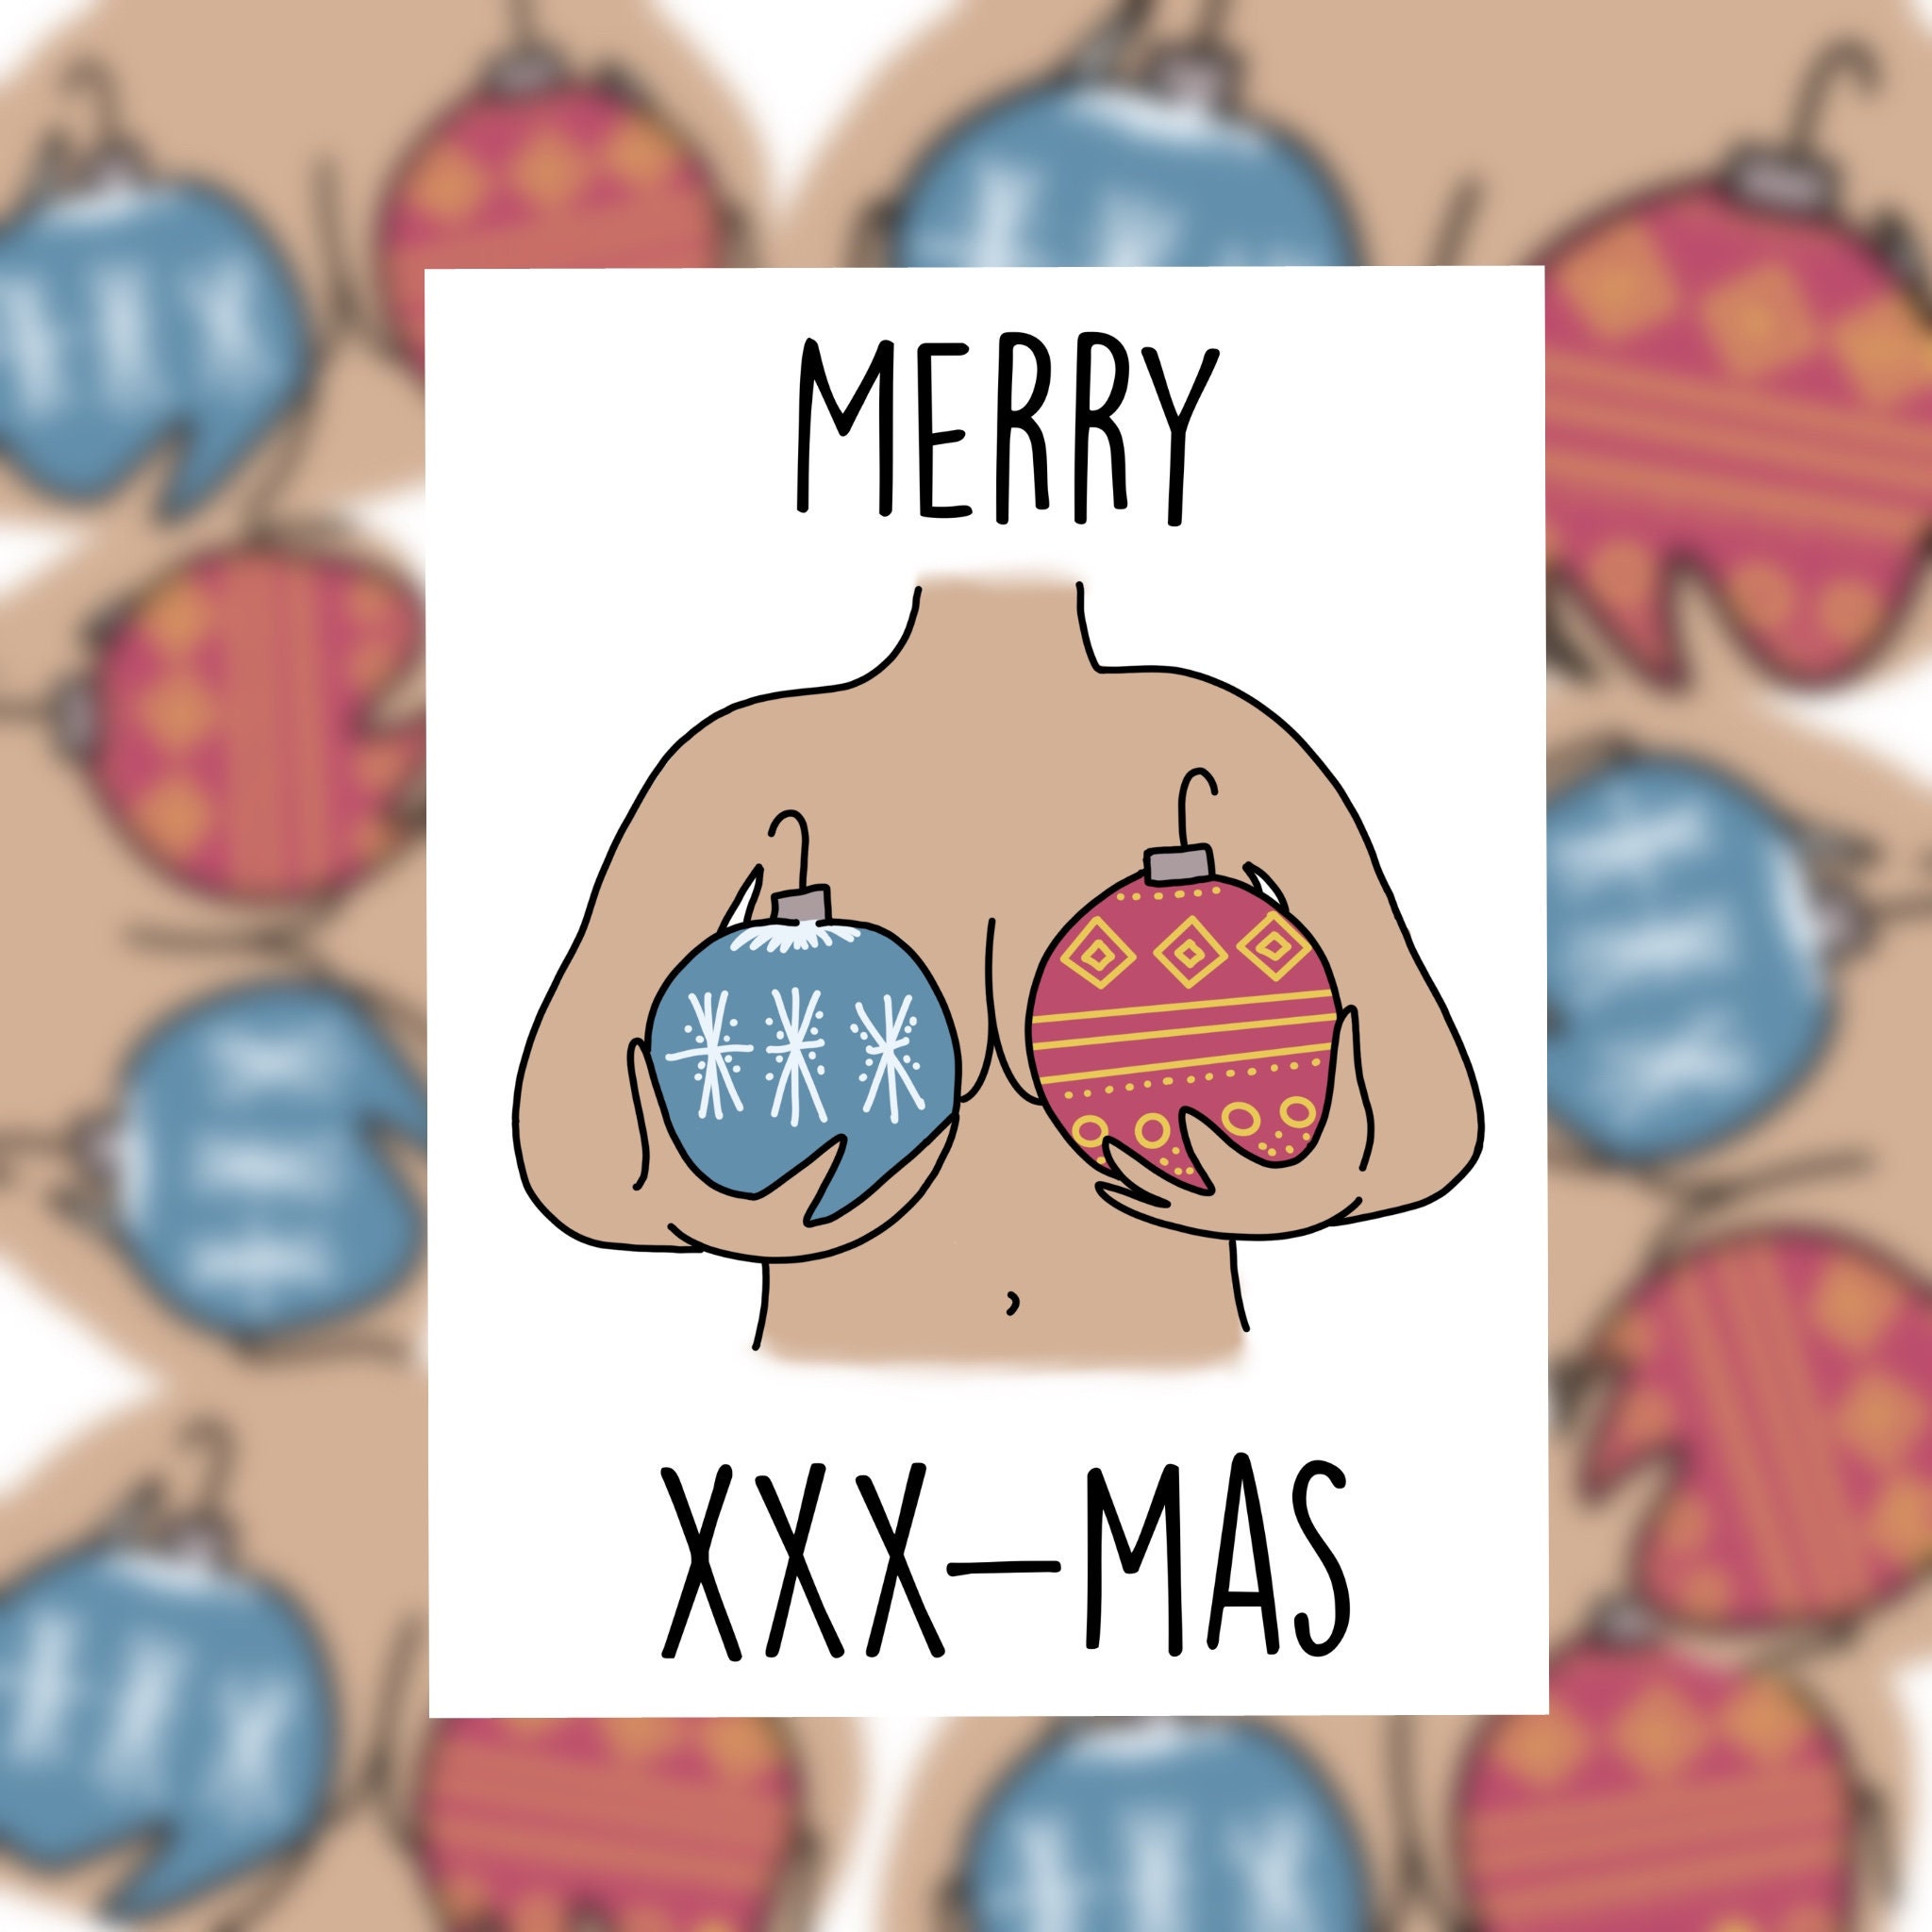 Merry xmas xxx